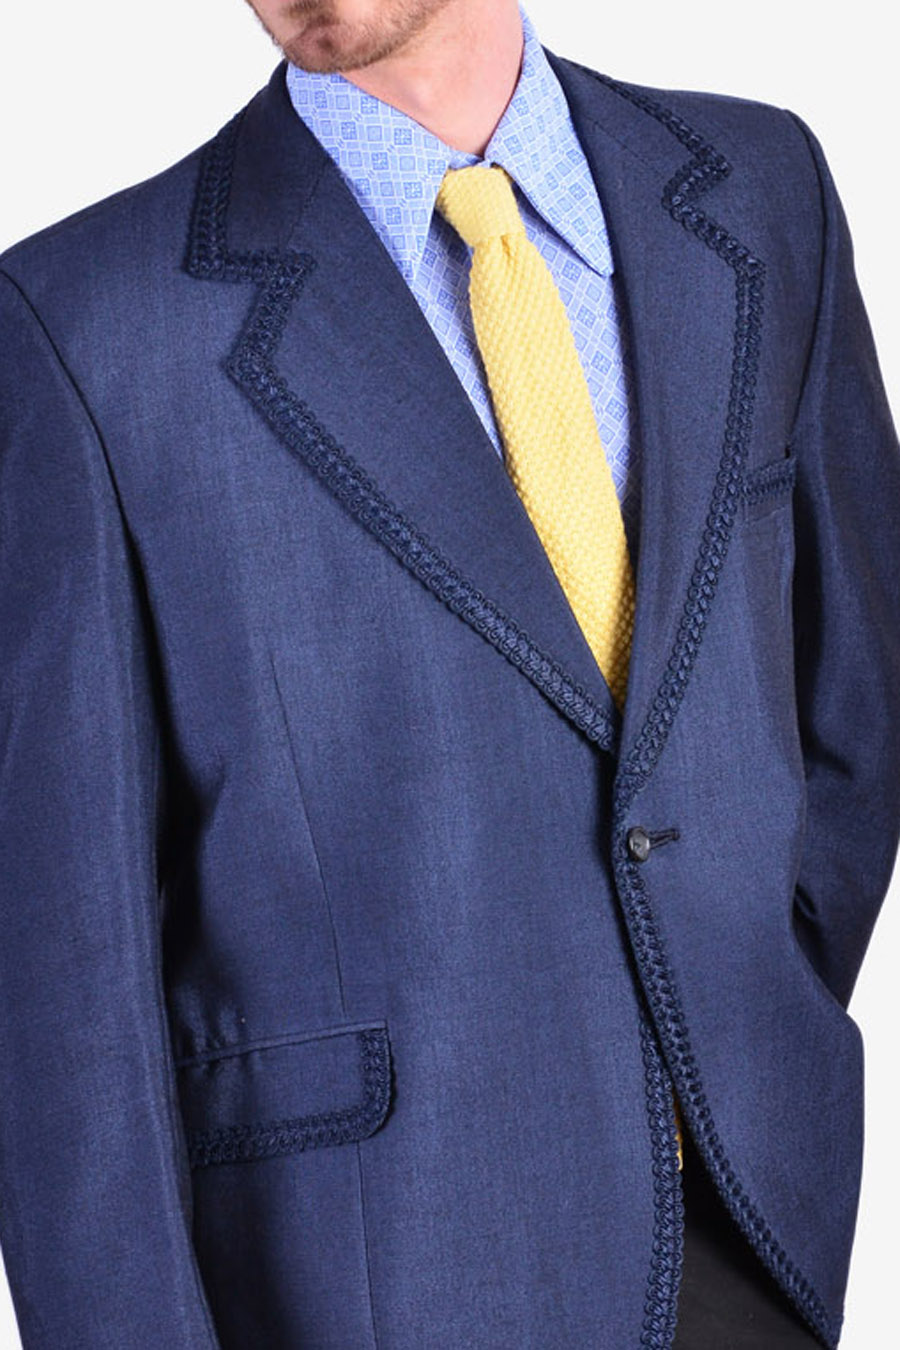 www.brickvintage.com Vintage 1970's Arthur Gardner Tuxedo Jacket Size 40 M Clothing Mens Clothing Jackets & Coats 